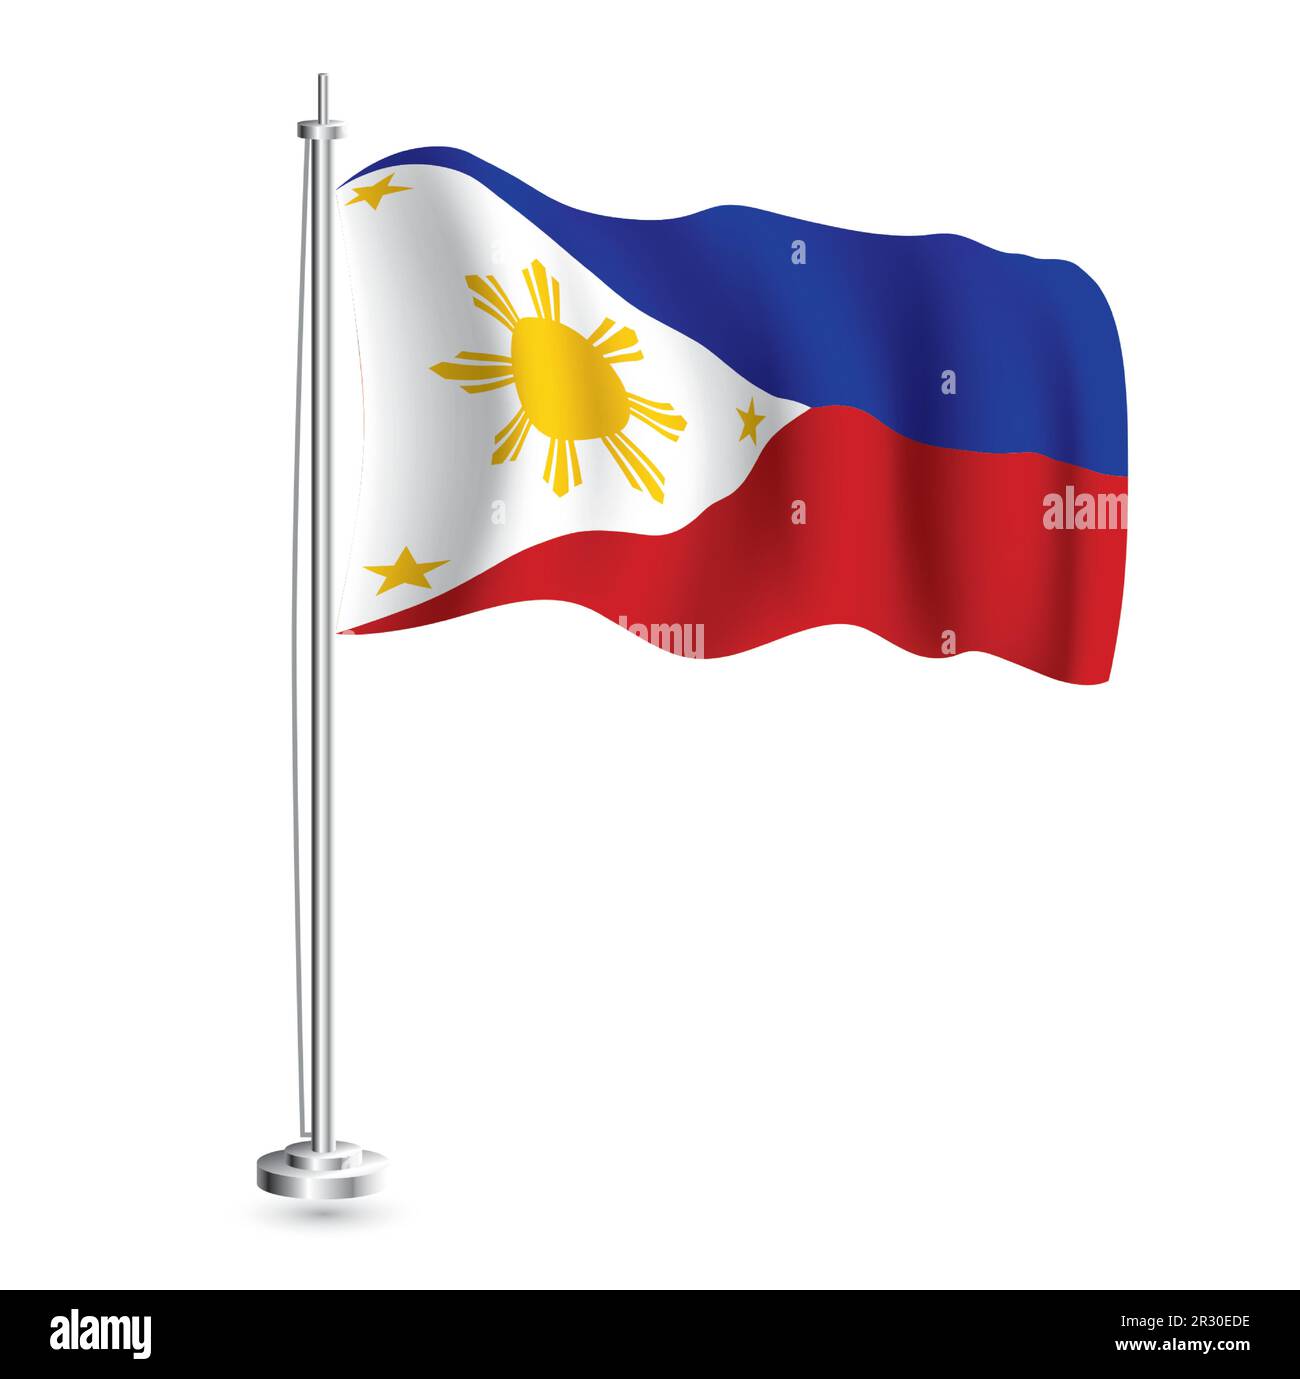 Bandiera filippina. Bandiera a onda realistica isolata del paese delle Filippine sul flagpole. Illustrazione vettoriale. Illustrazione Vettoriale